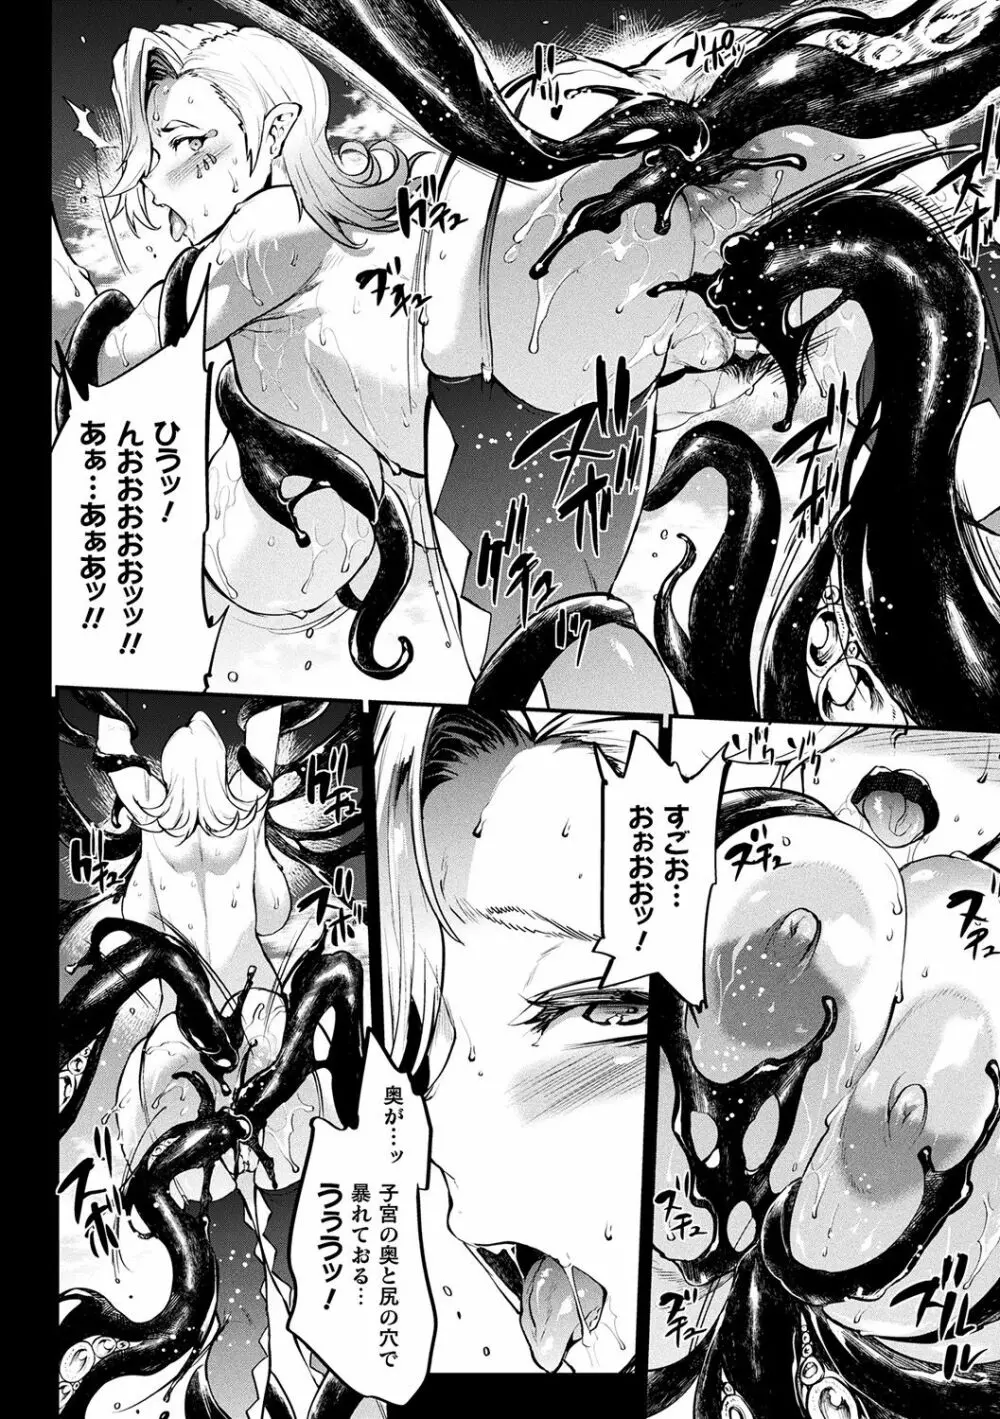 [エレクトさわる] 雷光神姫アイギスマギアII -PANDRA saga 3rd ignition- + 電子書籍特典デジタルポスター [DL版] 162ページ